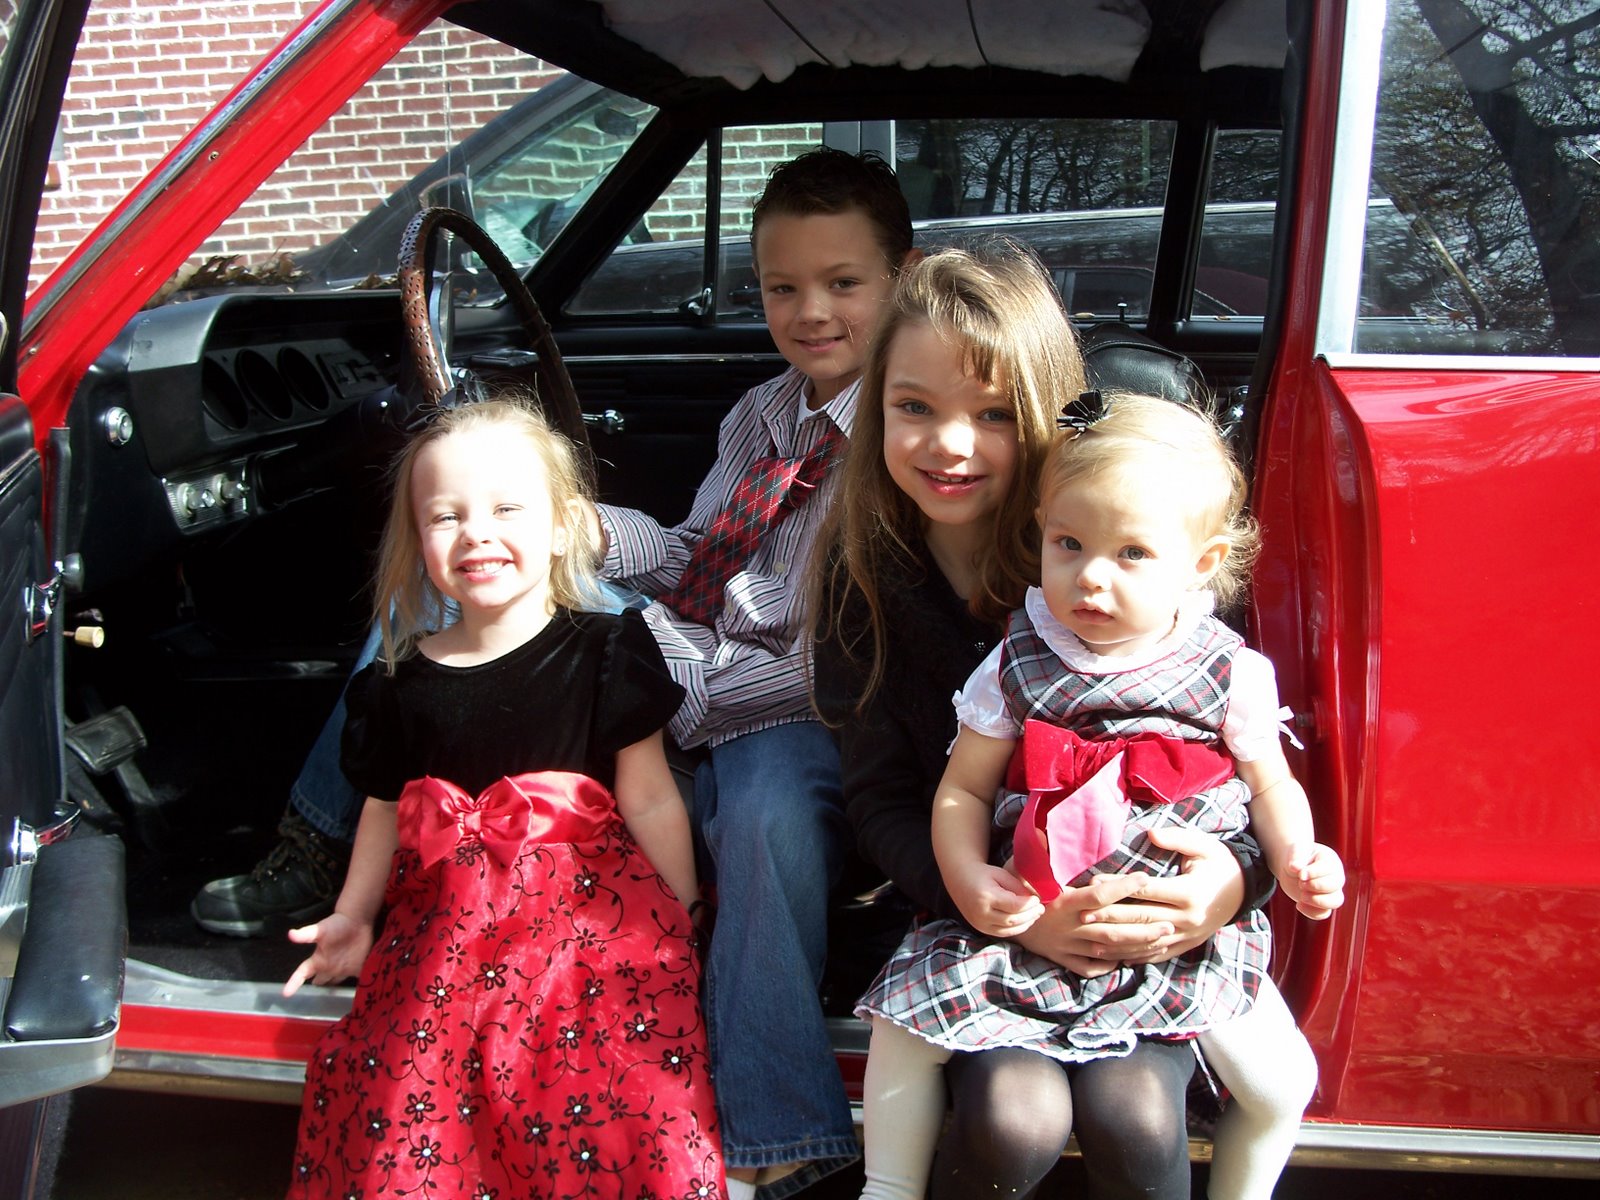 4 of my favorite people in my wonderful Granddad's old car!